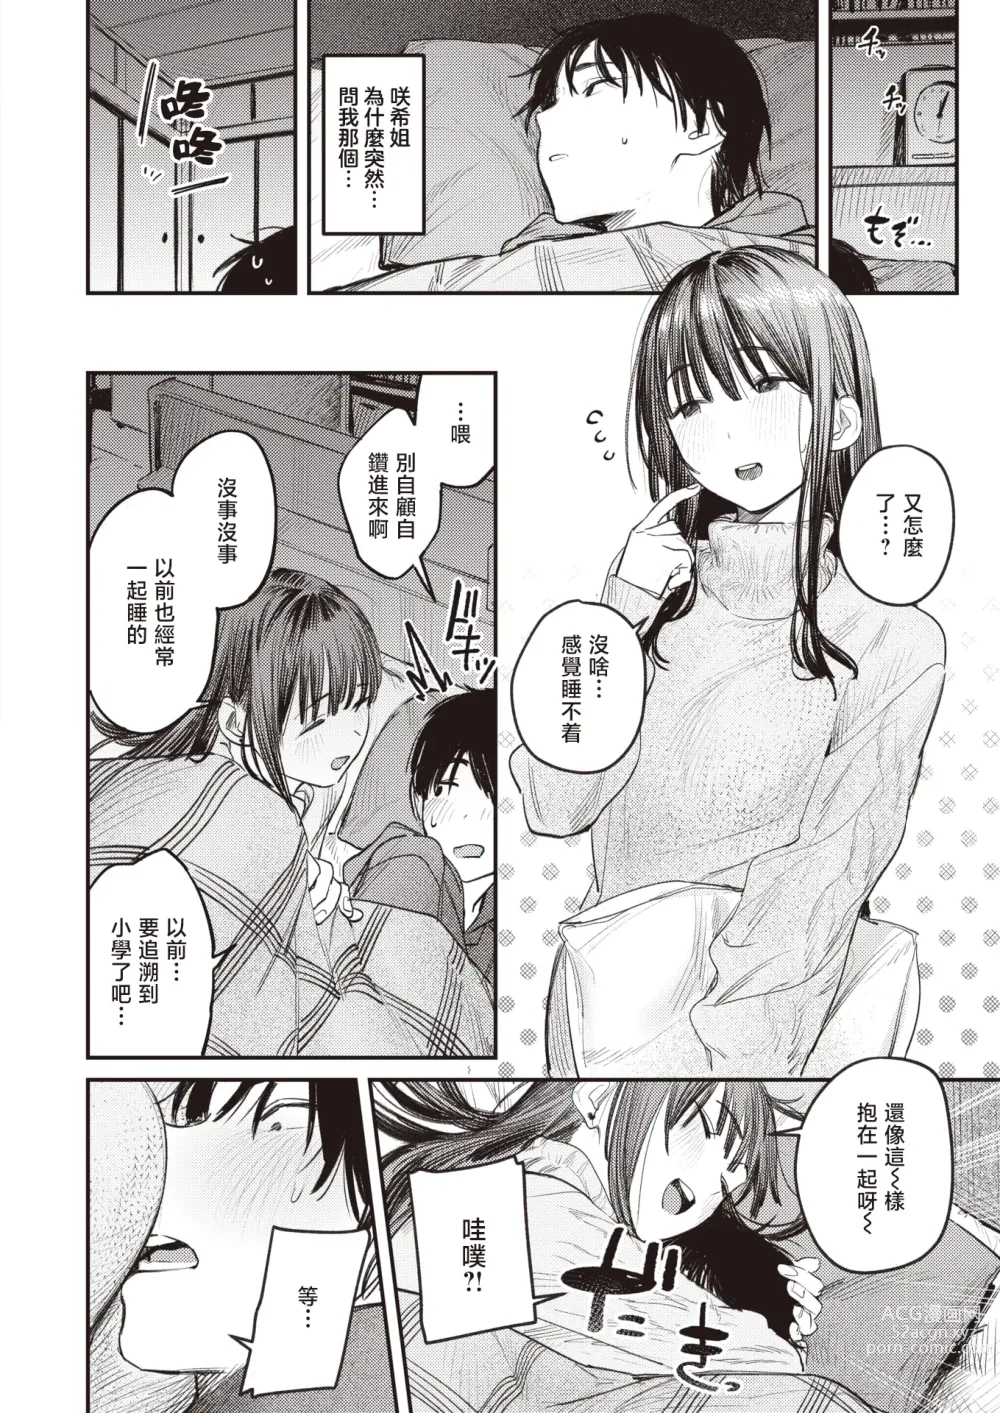 Page 7 of manga 直到雾释冰融